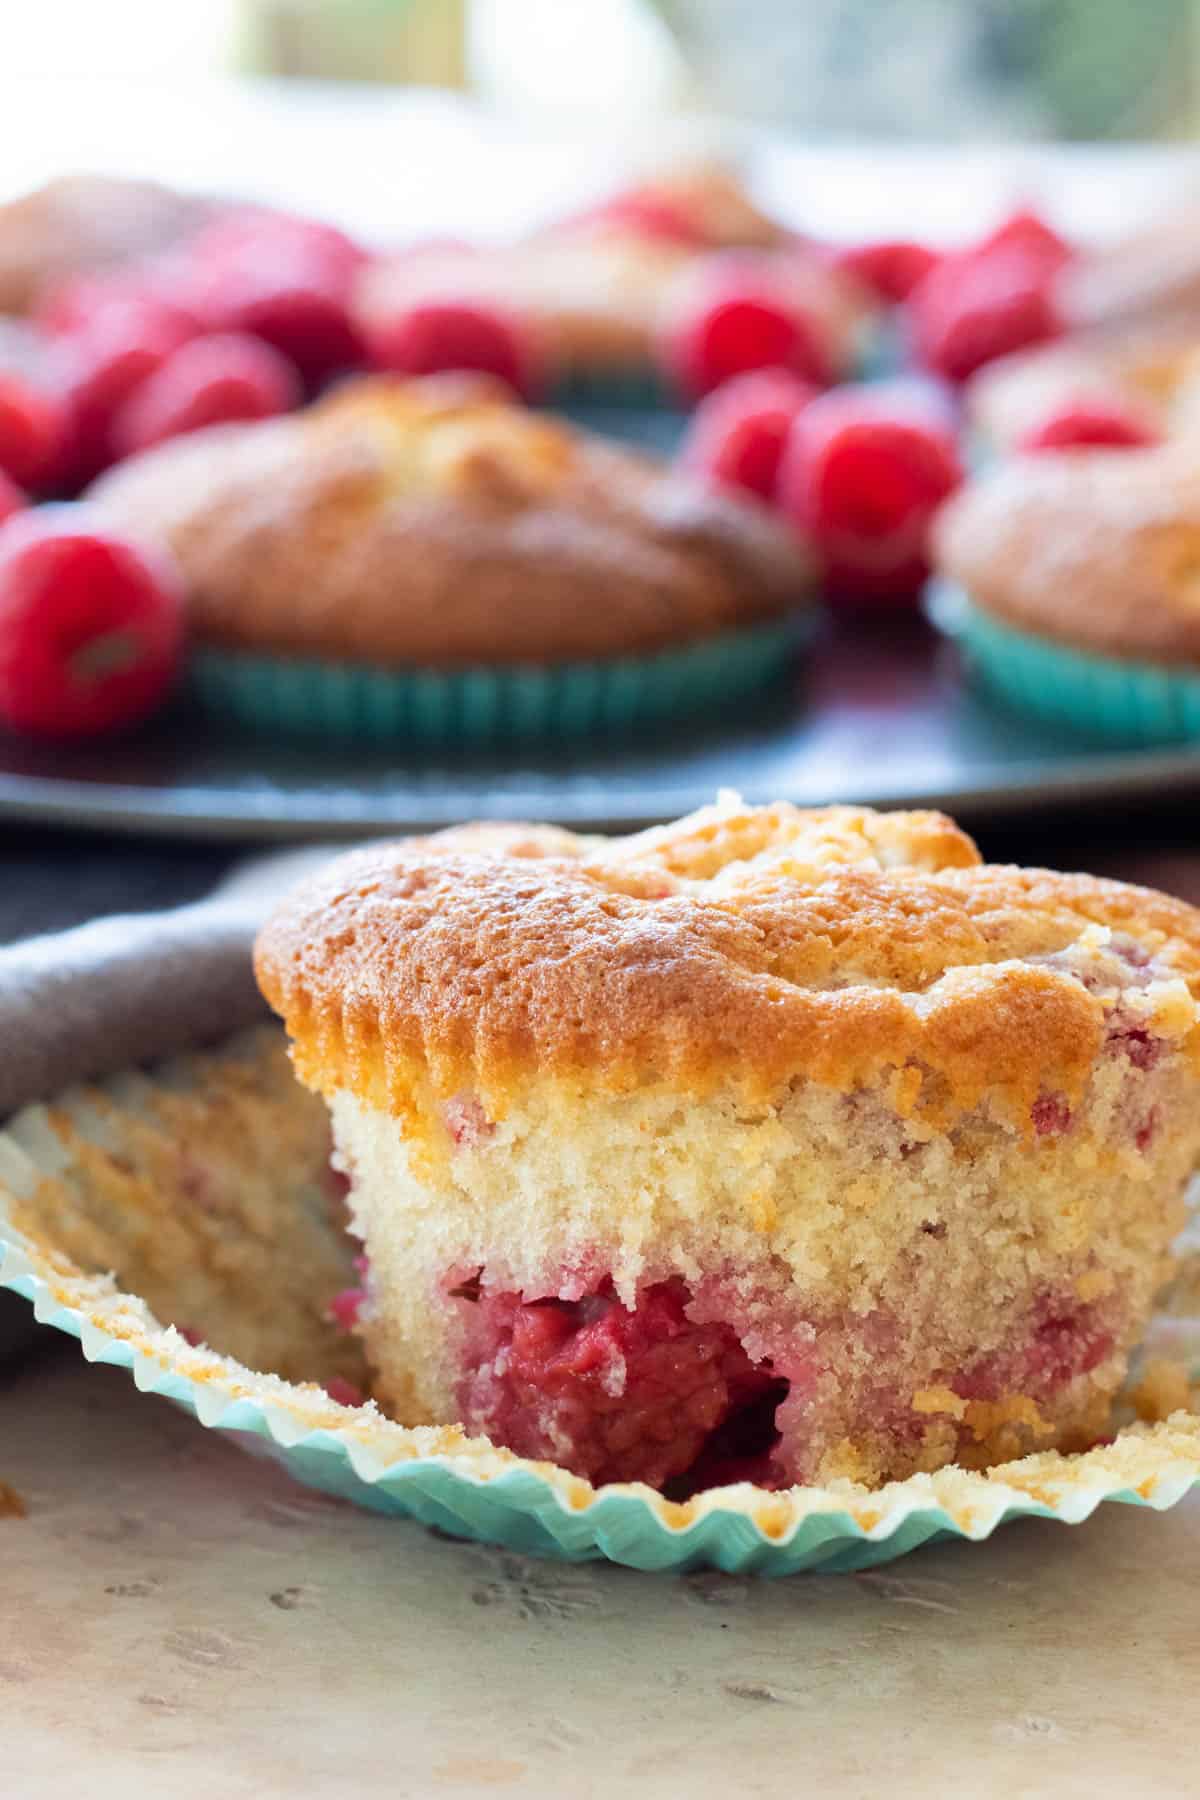 A raspberry muffin.